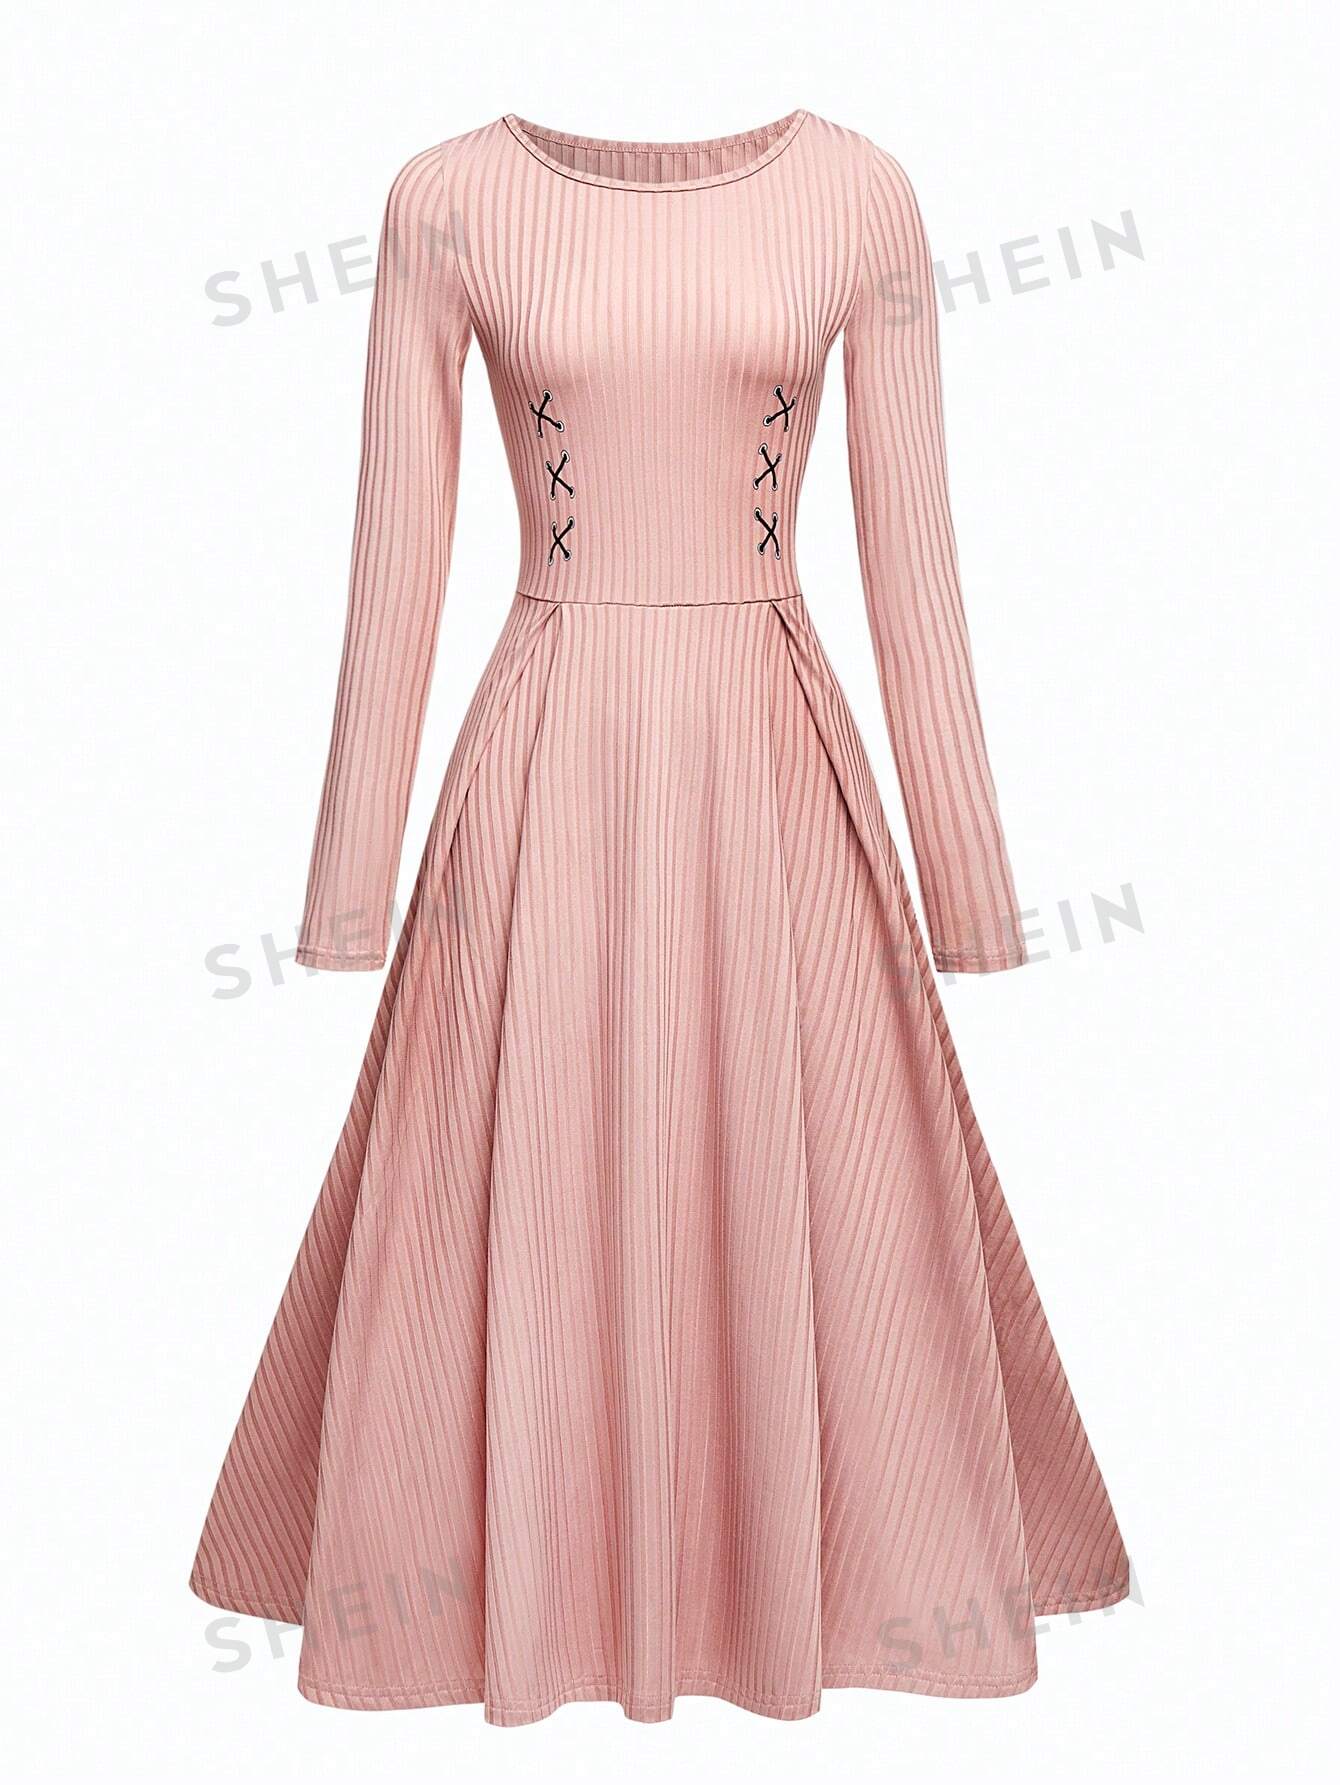 SHEIN Unity женское облегающее платье в рубчик с круглым вырезом и длинными рукавами, пыльный розовый